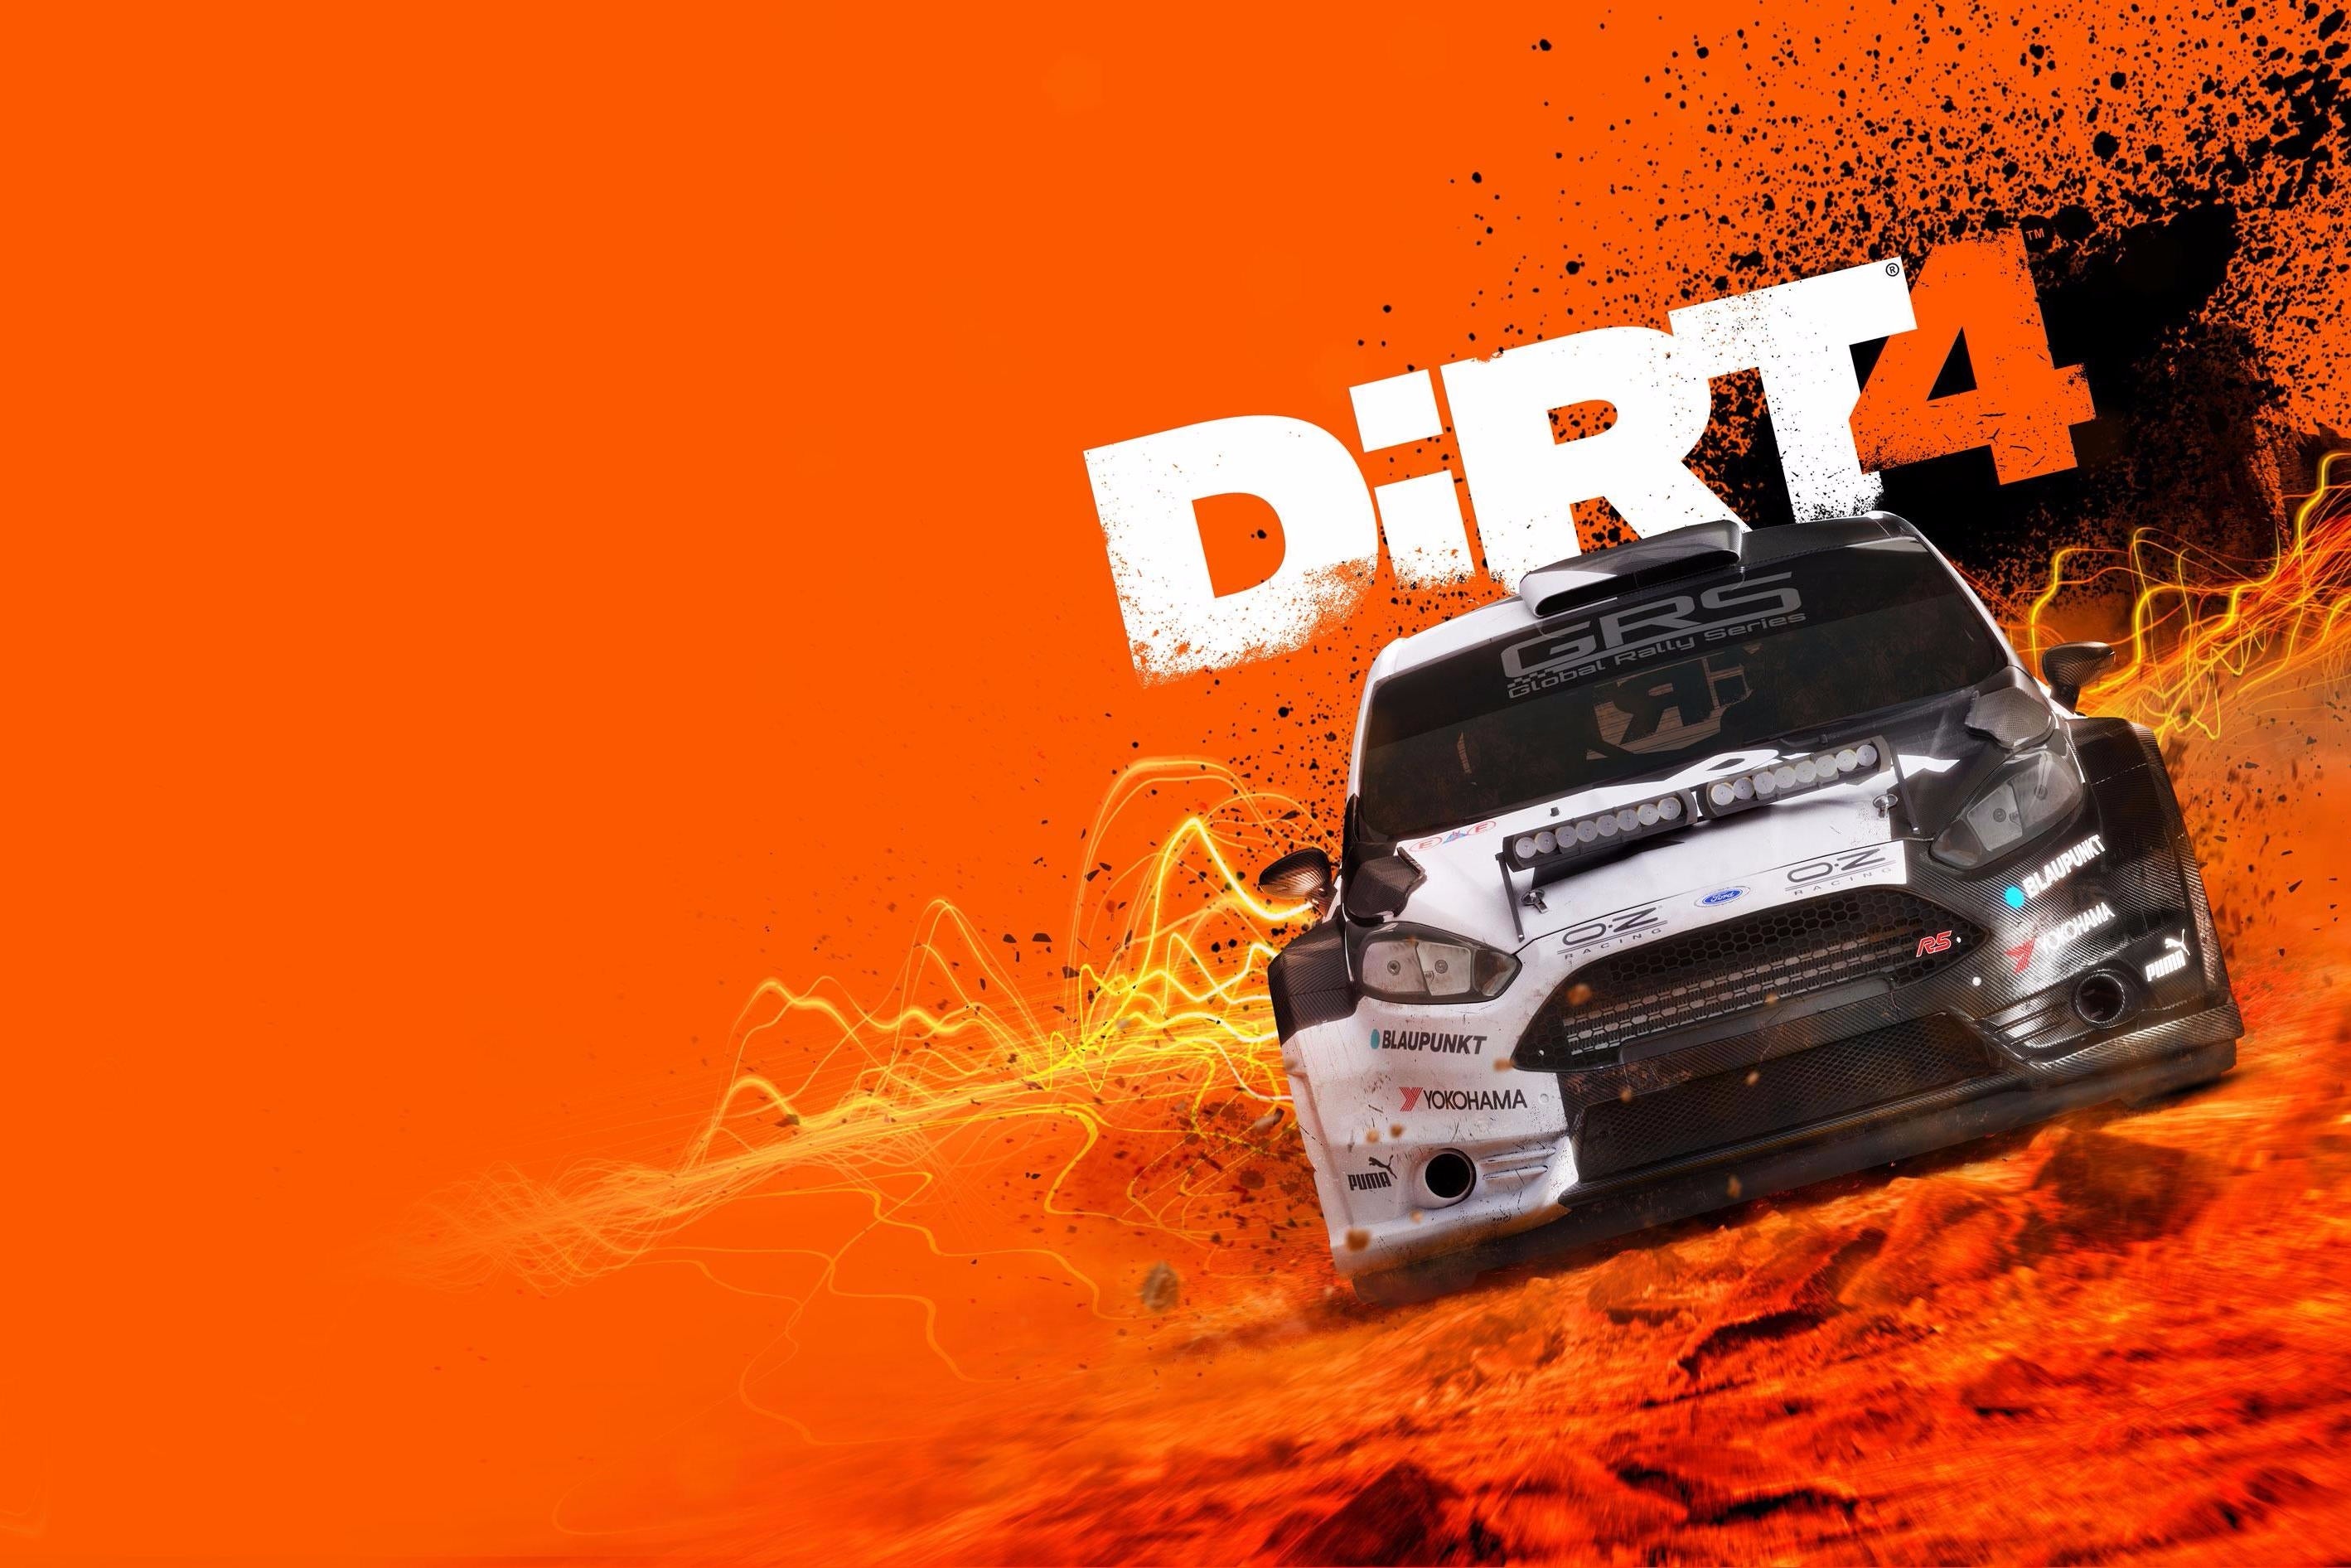 Afbeeldingen van Dirt 4 aangekondigd